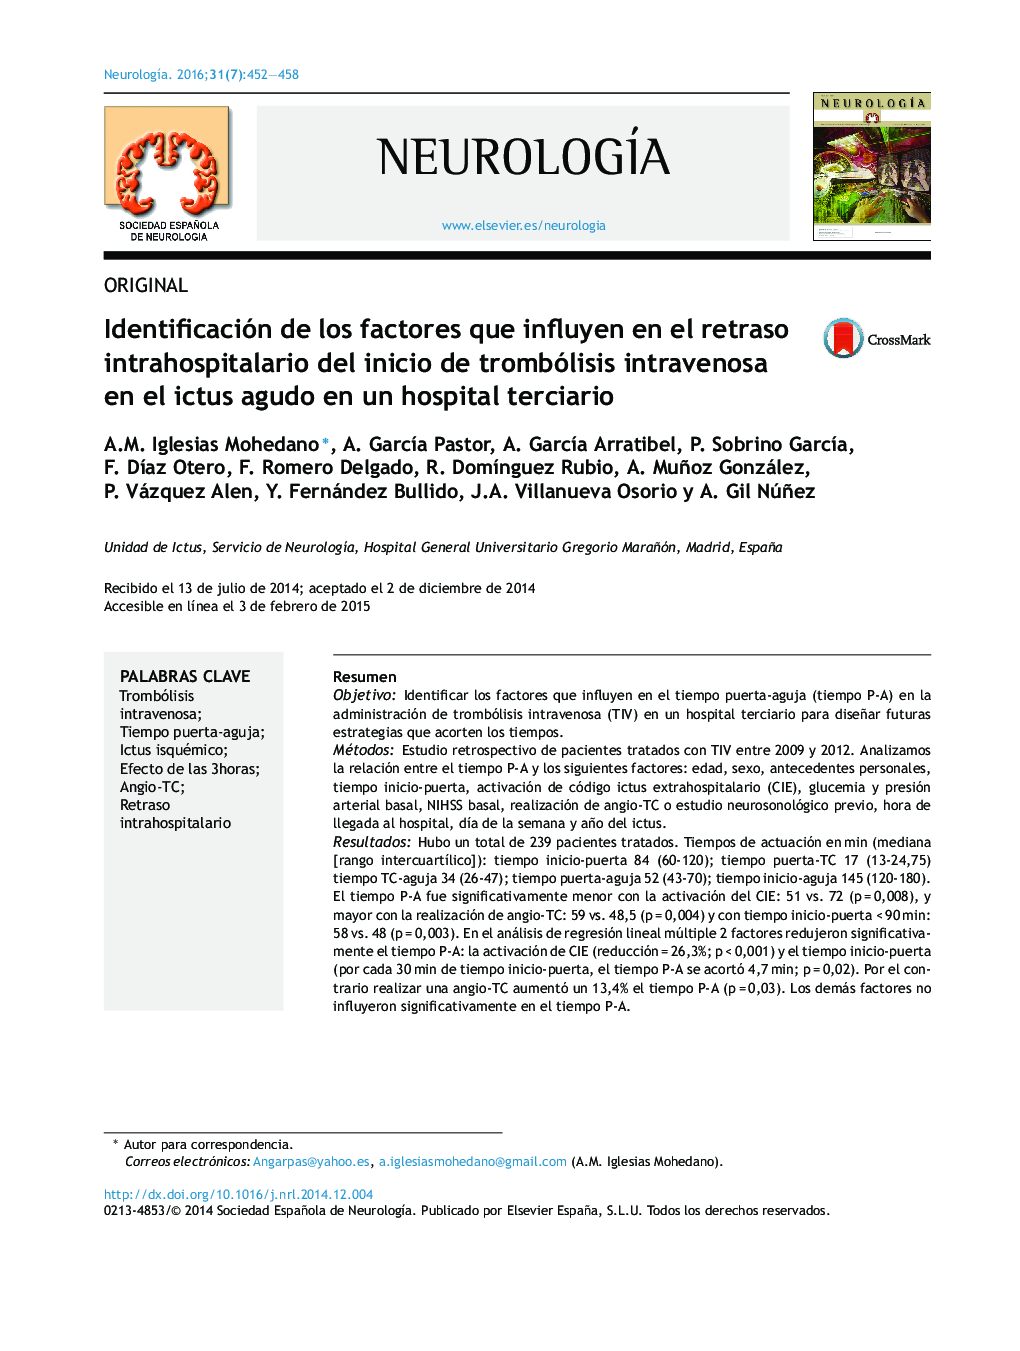 Identificación de los factores que influyen en el retraso intrahospitalario del inicio de trombólisis intravenosa en el ictus agudo en un hospital terciario